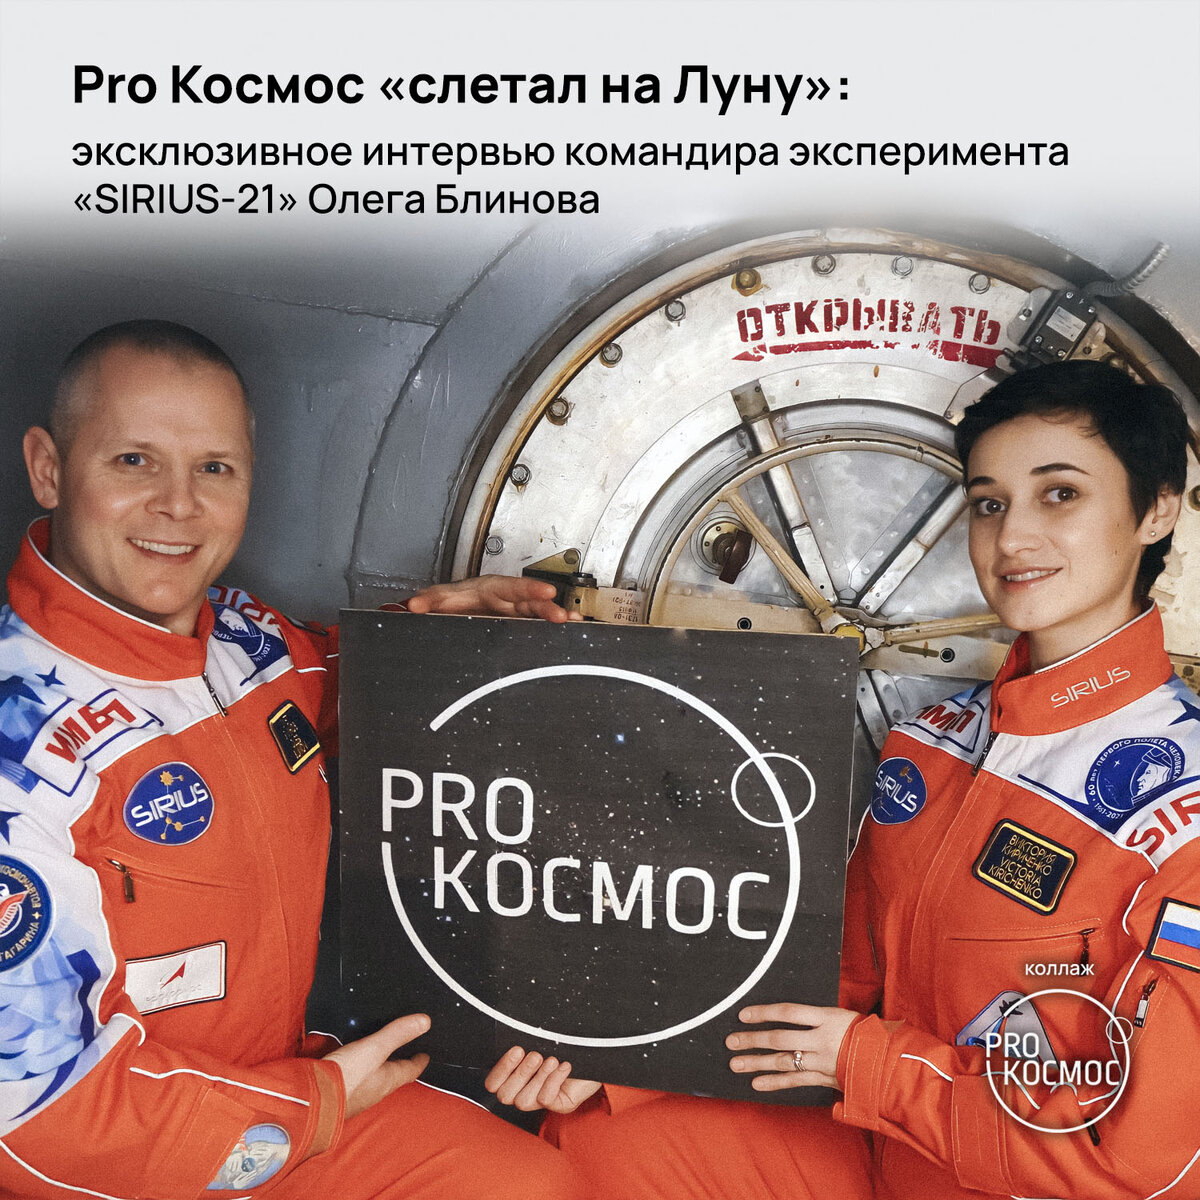 Олег Блинов и Виктория Кириченко распечатали наш логотип во время изоляционного эксперимента. Как здорово! height=1200px width=1200px